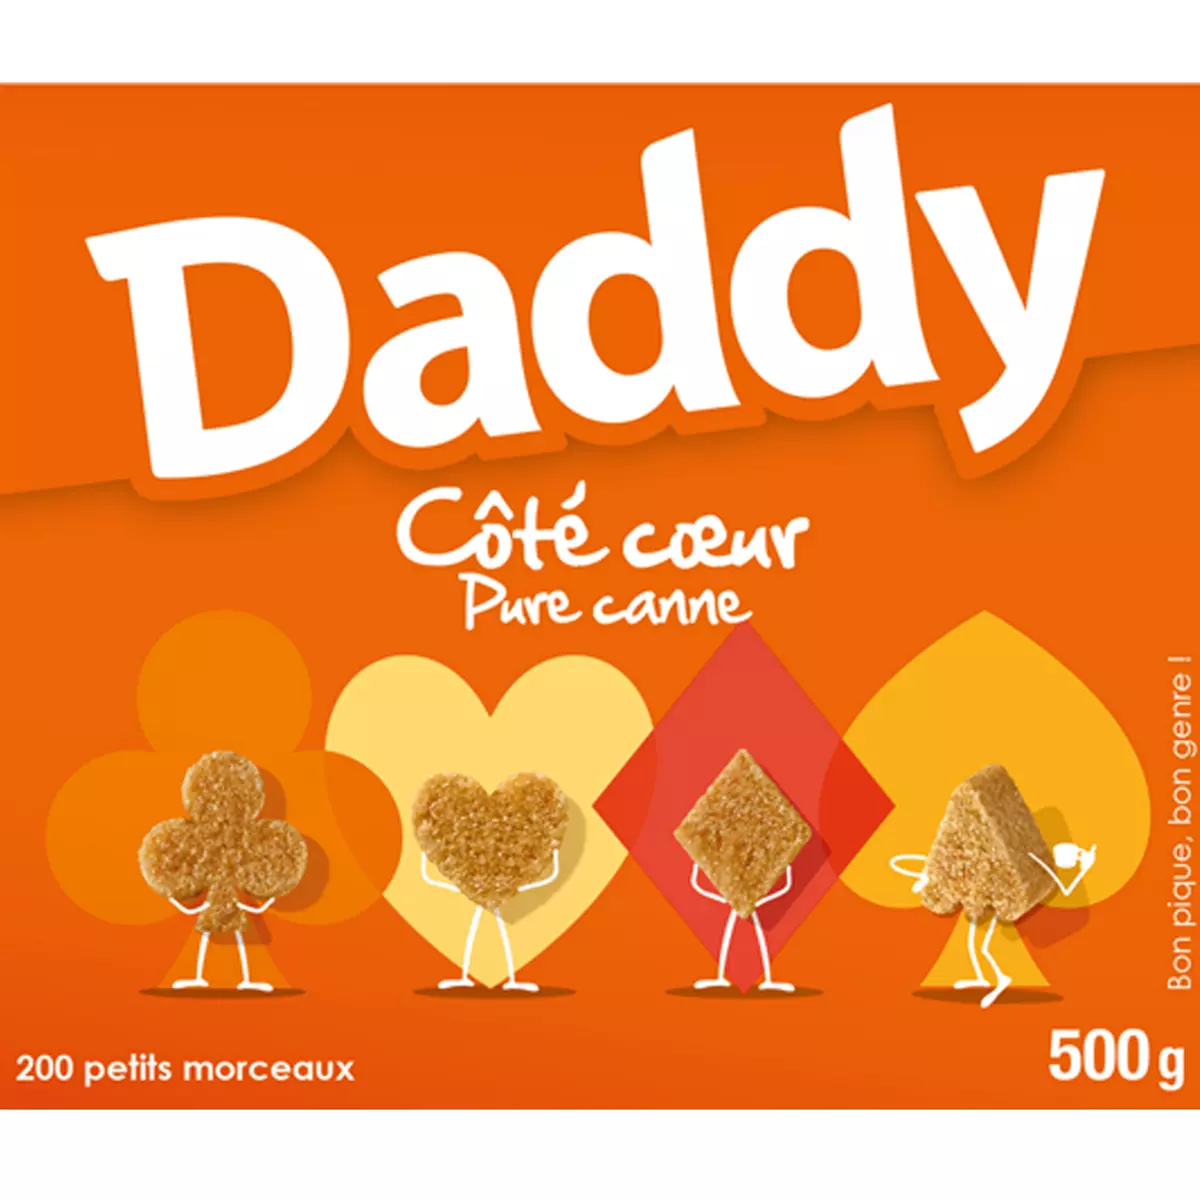 DADDY Côté coeur petits morceaux de sucres pure canne 200 pièces 500g